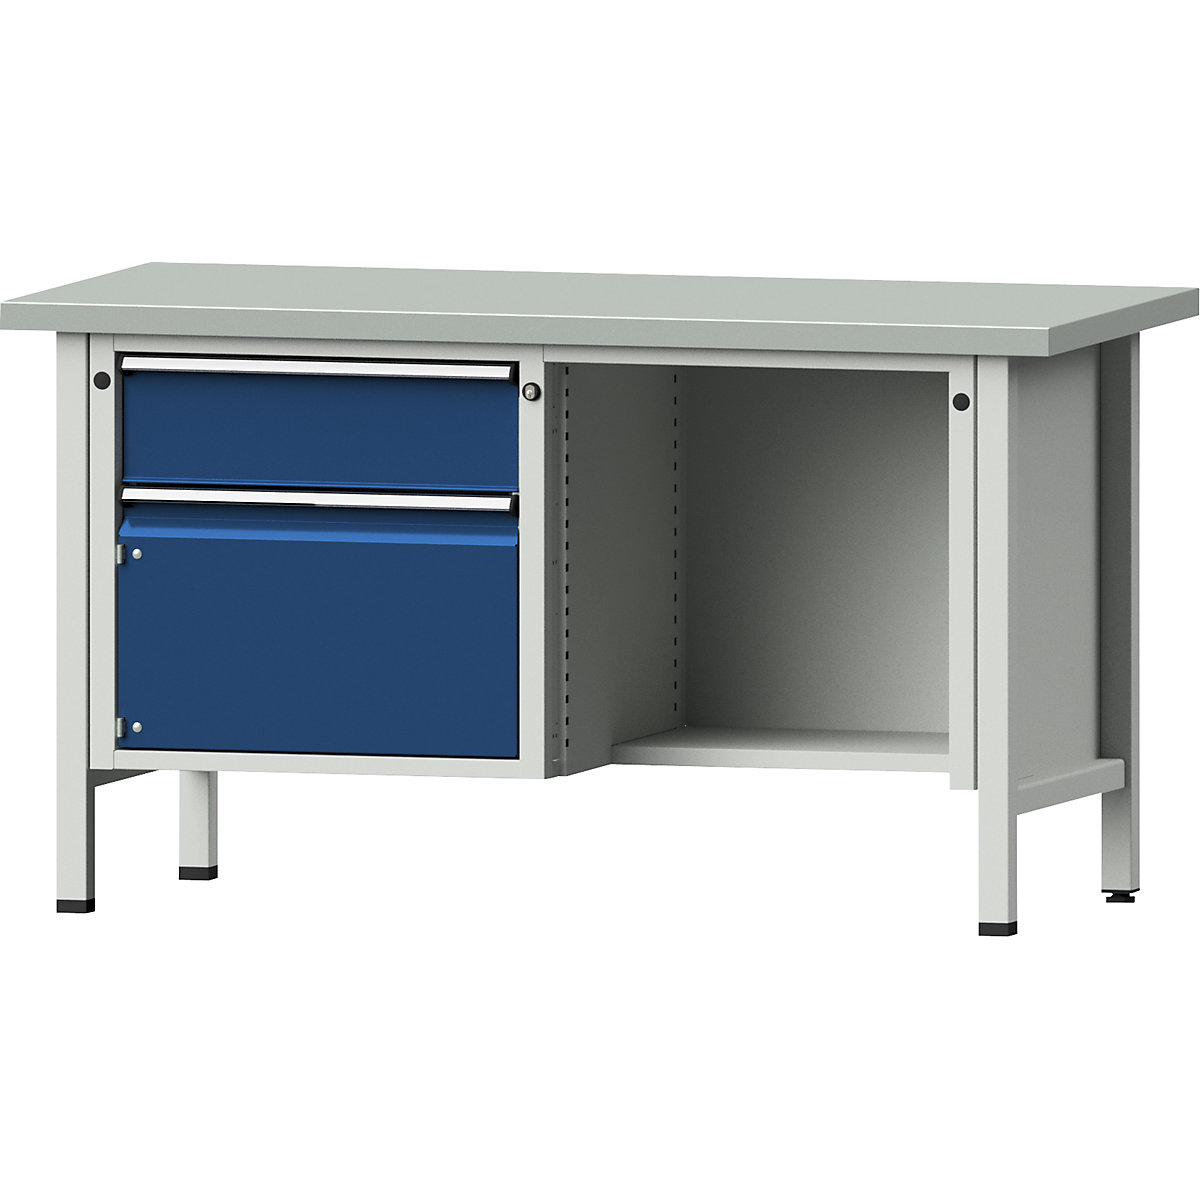 Dílenský stůl s rámovou konstrukcí – ANKE, 1 zásuvka, dveře 360 mm, ½ odkládací police, ocelový plech, částečný výsuv-10